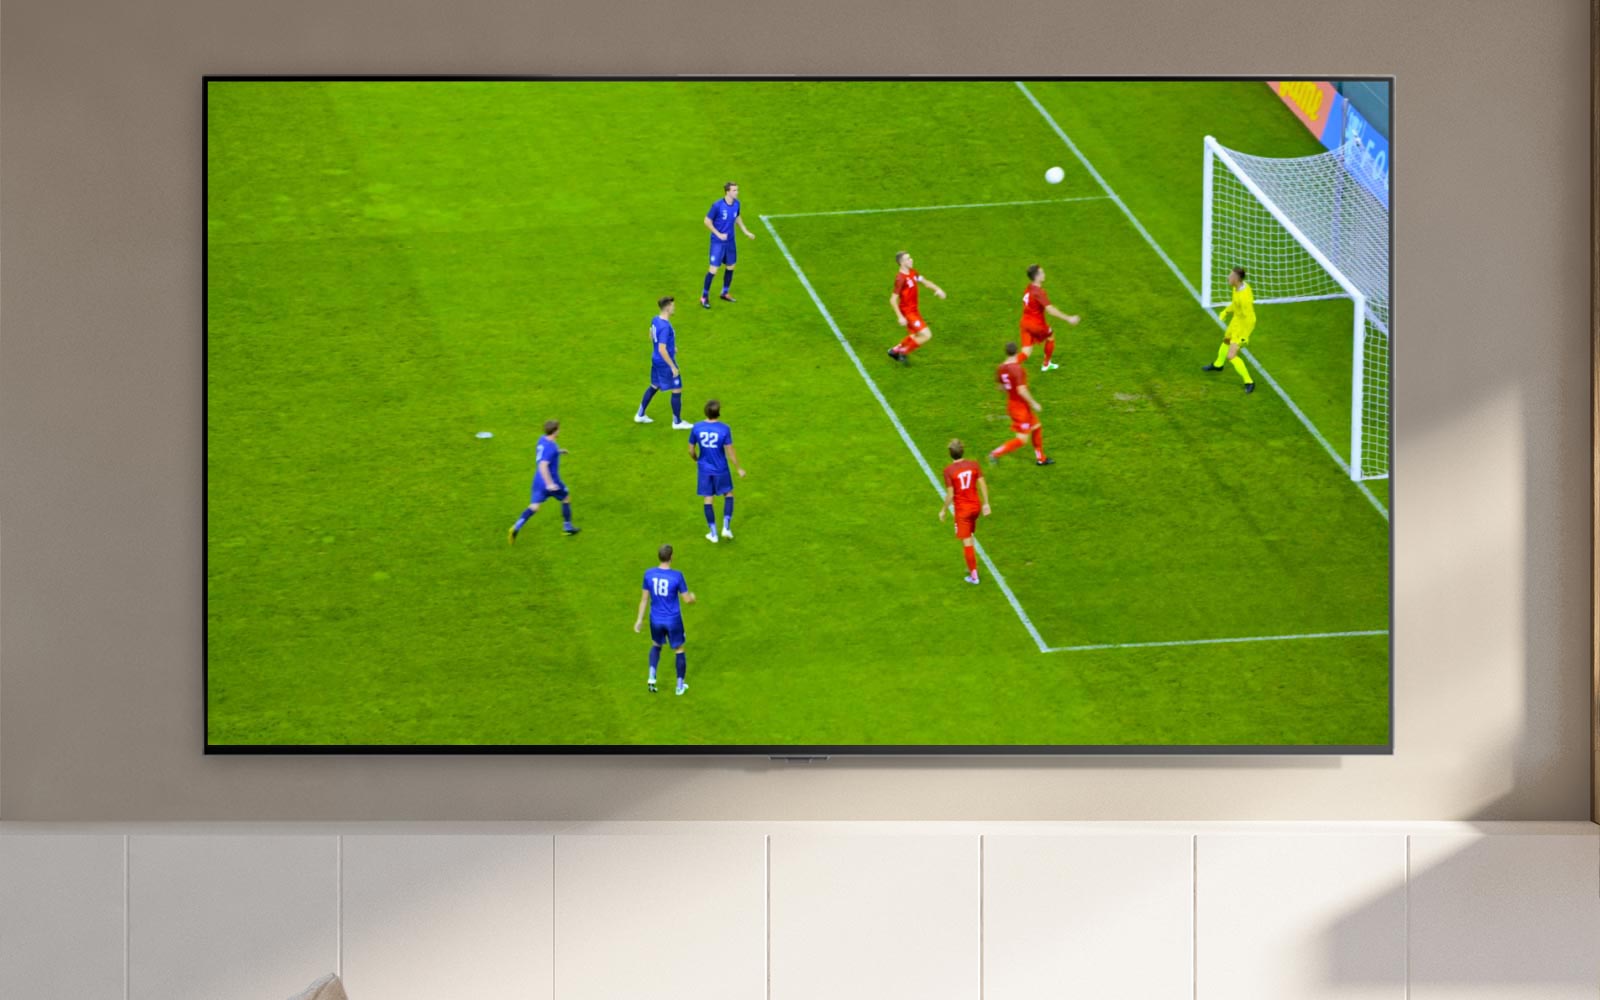 Экран телевизора, демонстрирующий футбольный стадион и игрока, забившего гол (воспроизвести видео).